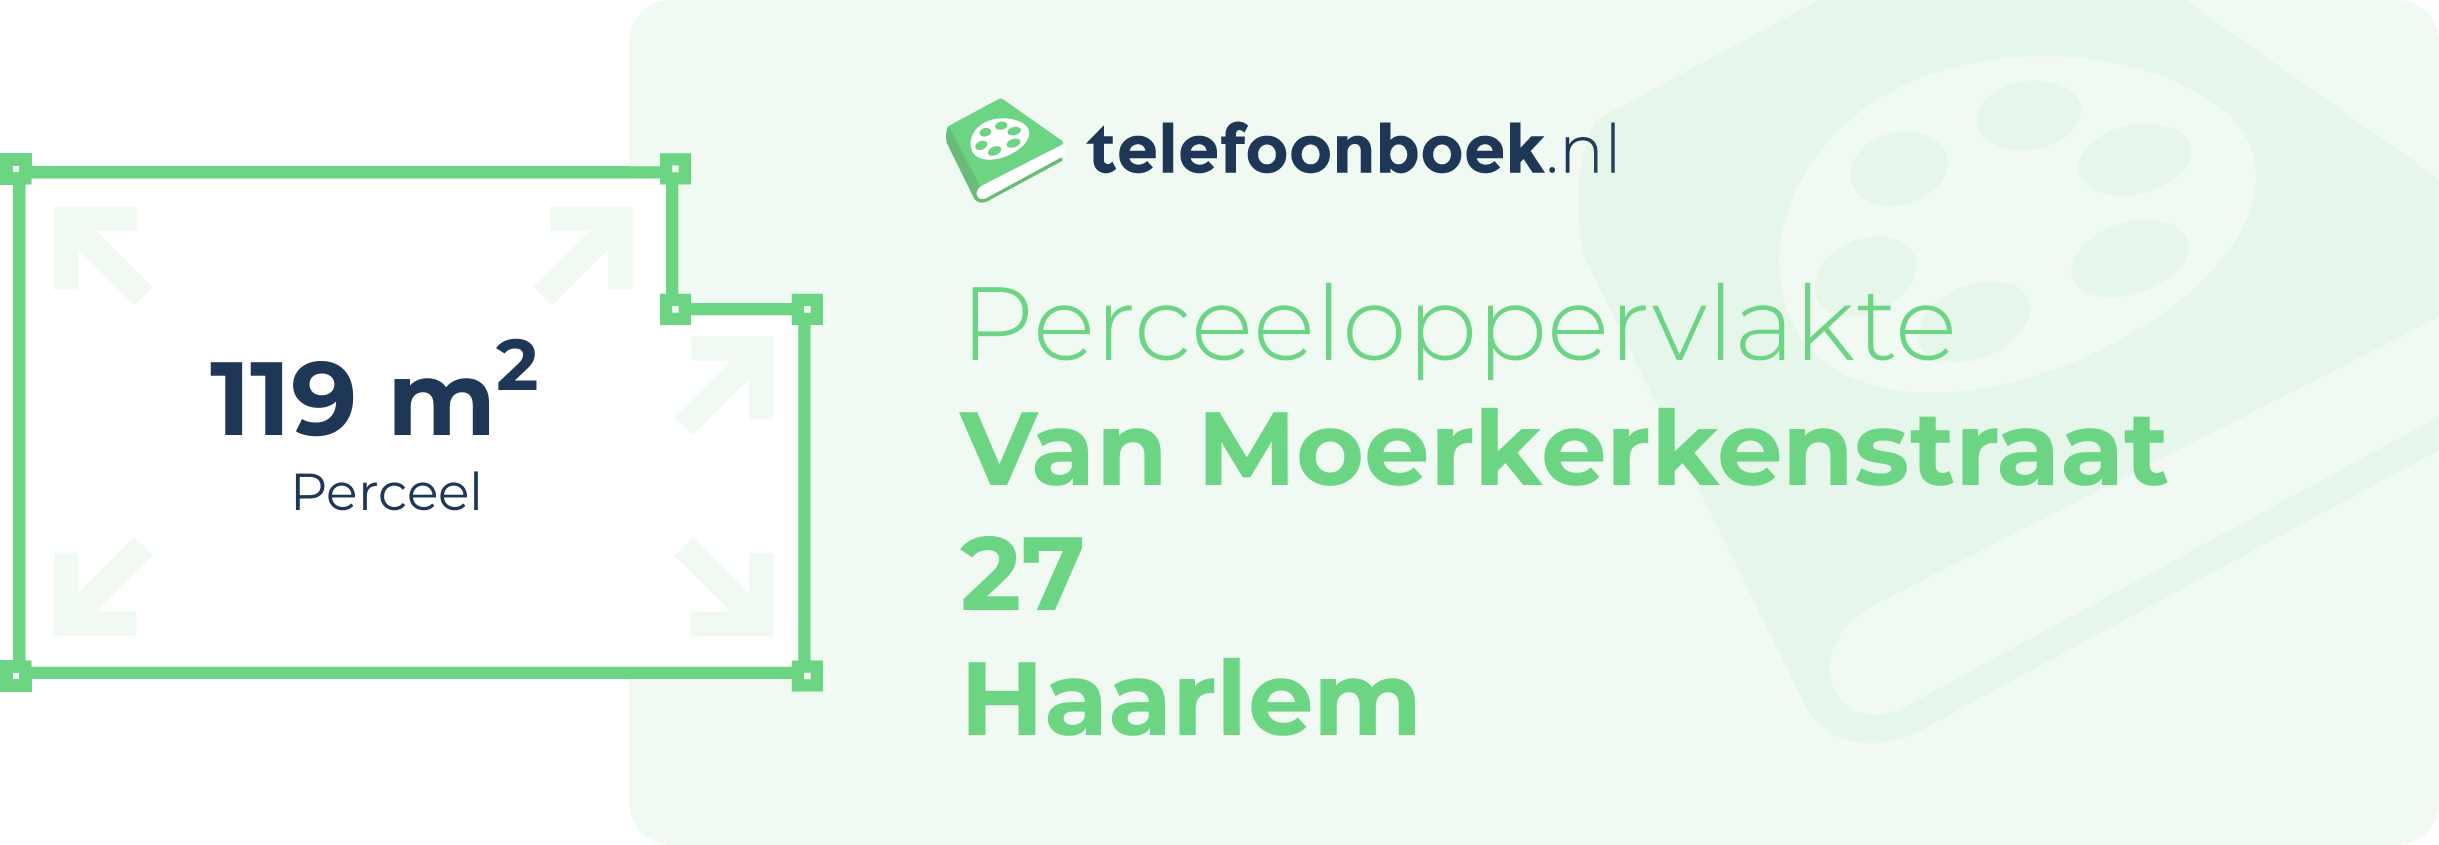 Perceeloppervlakte Van Moerkerkenstraat 27 Haarlem